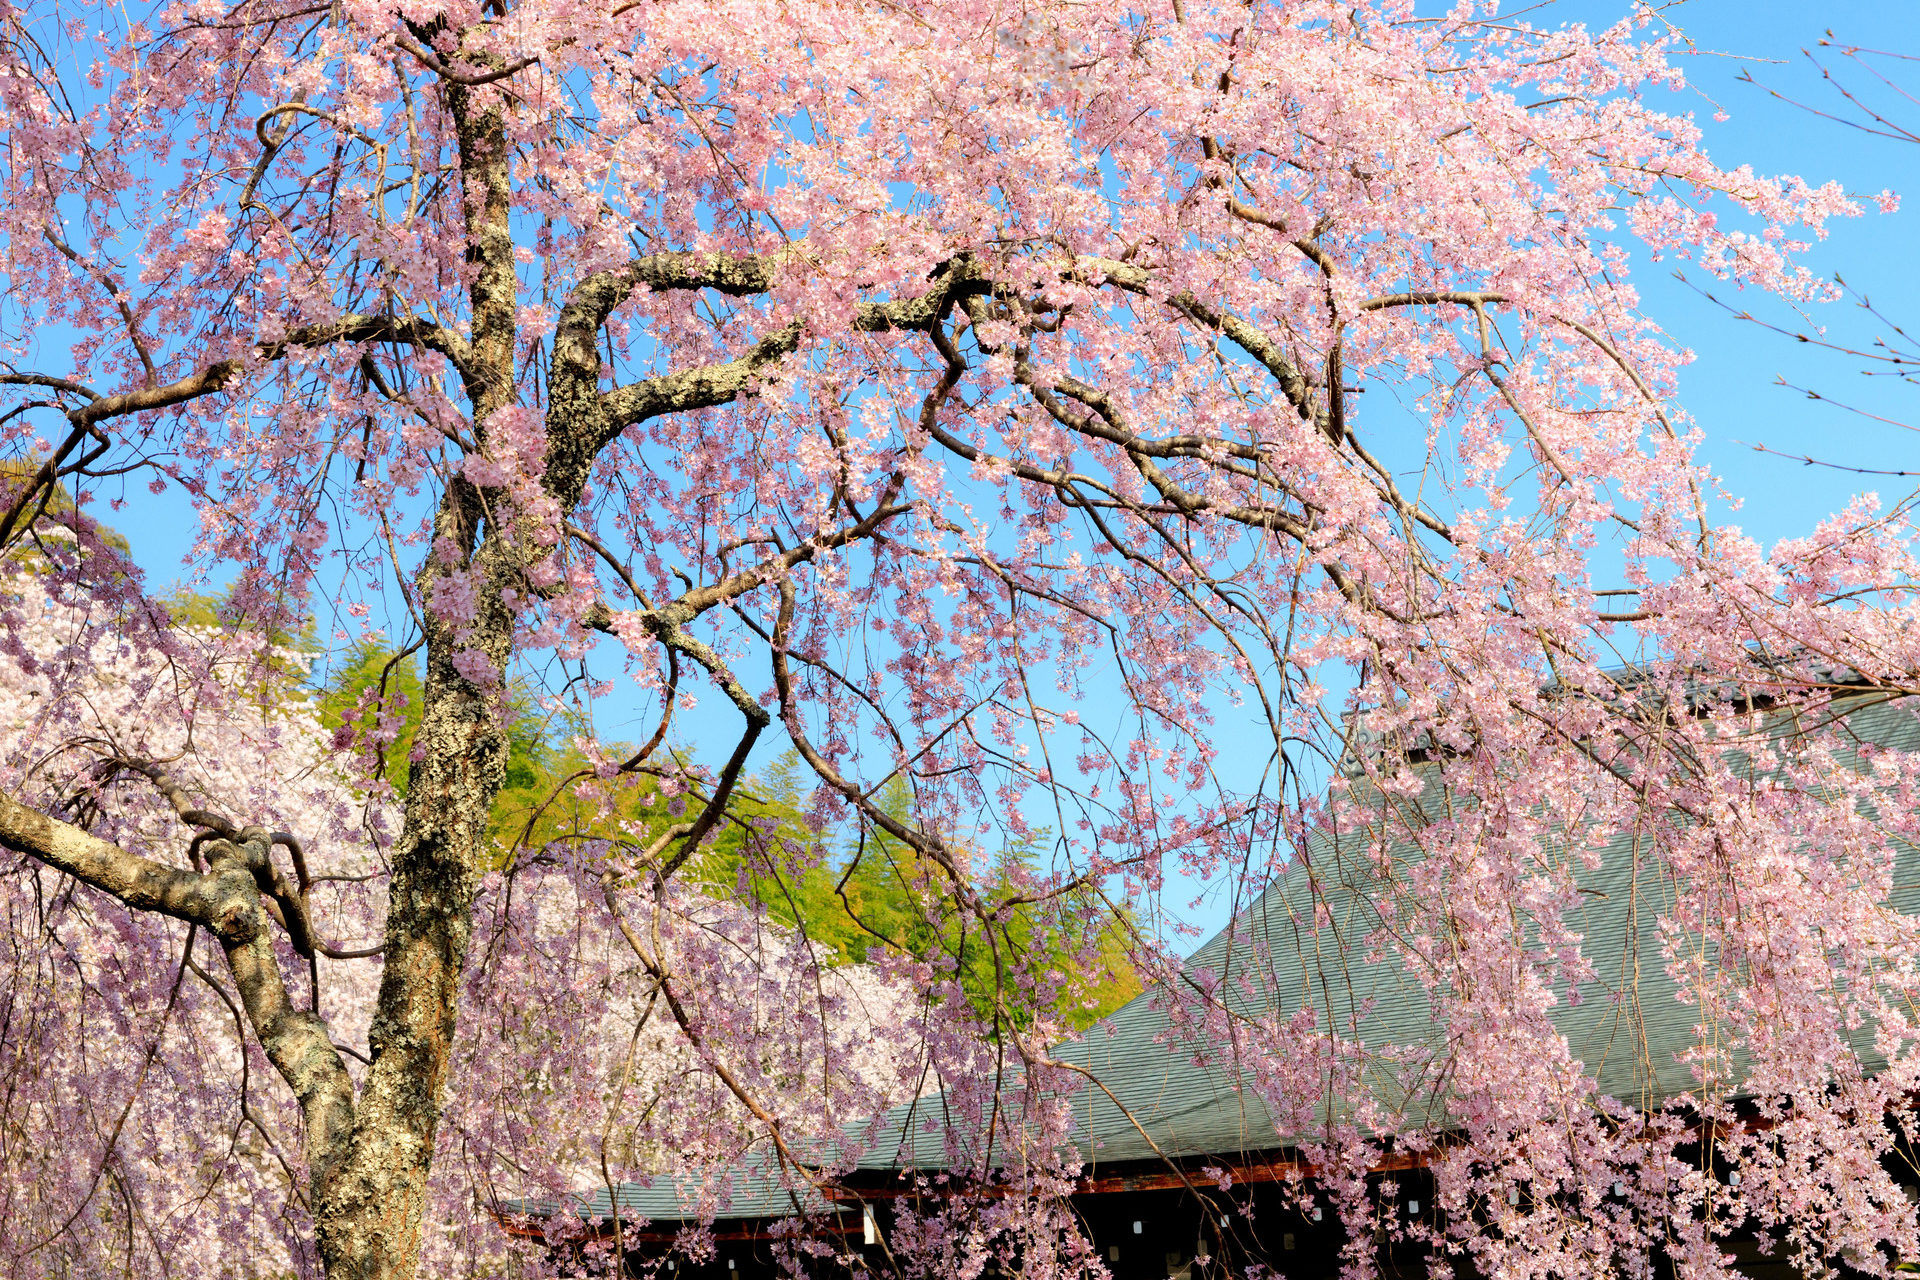 春の京都のデートスポットといえばここ 大事な二人のひとときを 春の京都で楽しみませんか Caedekyoto カエデ京都 紅葉と伝統美を引き継ぐバッグ